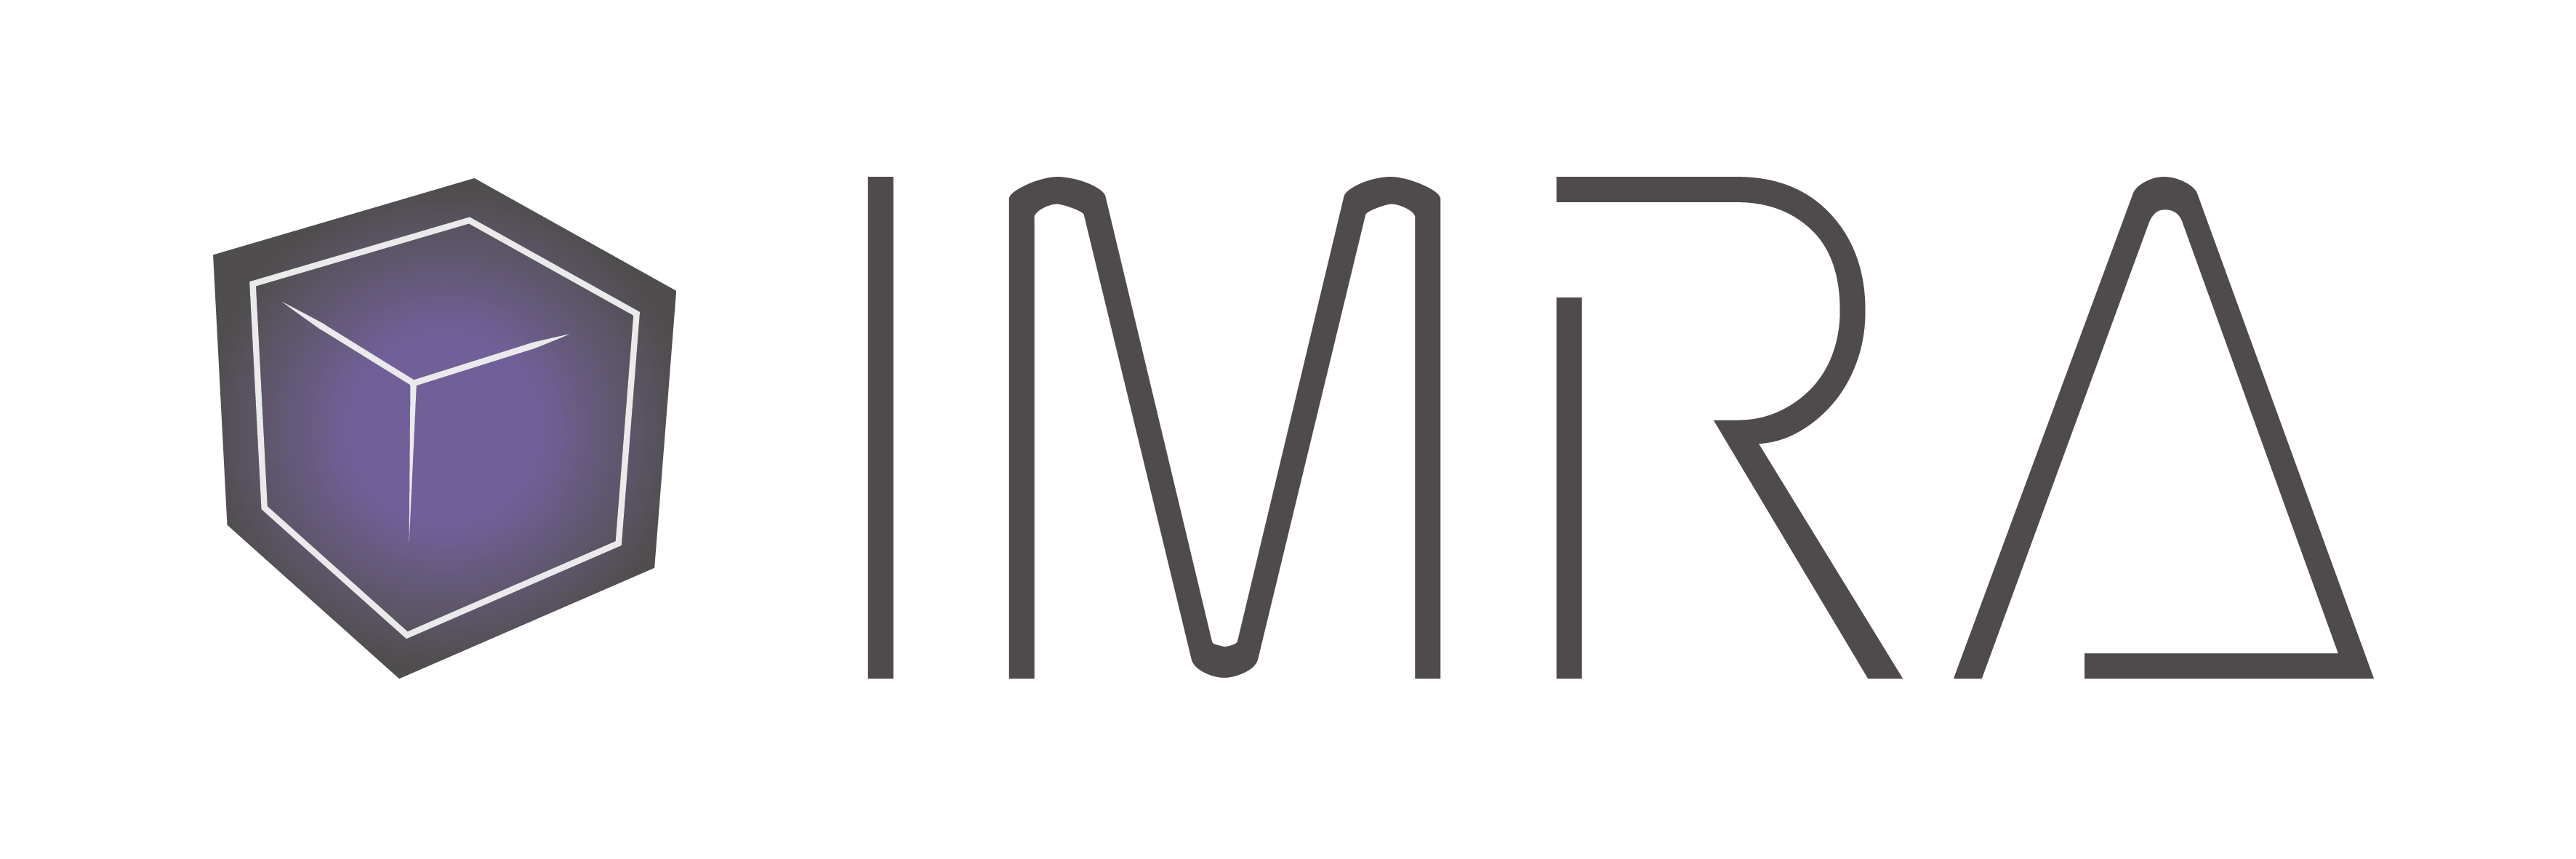 Italian Mixed Reality Association logo